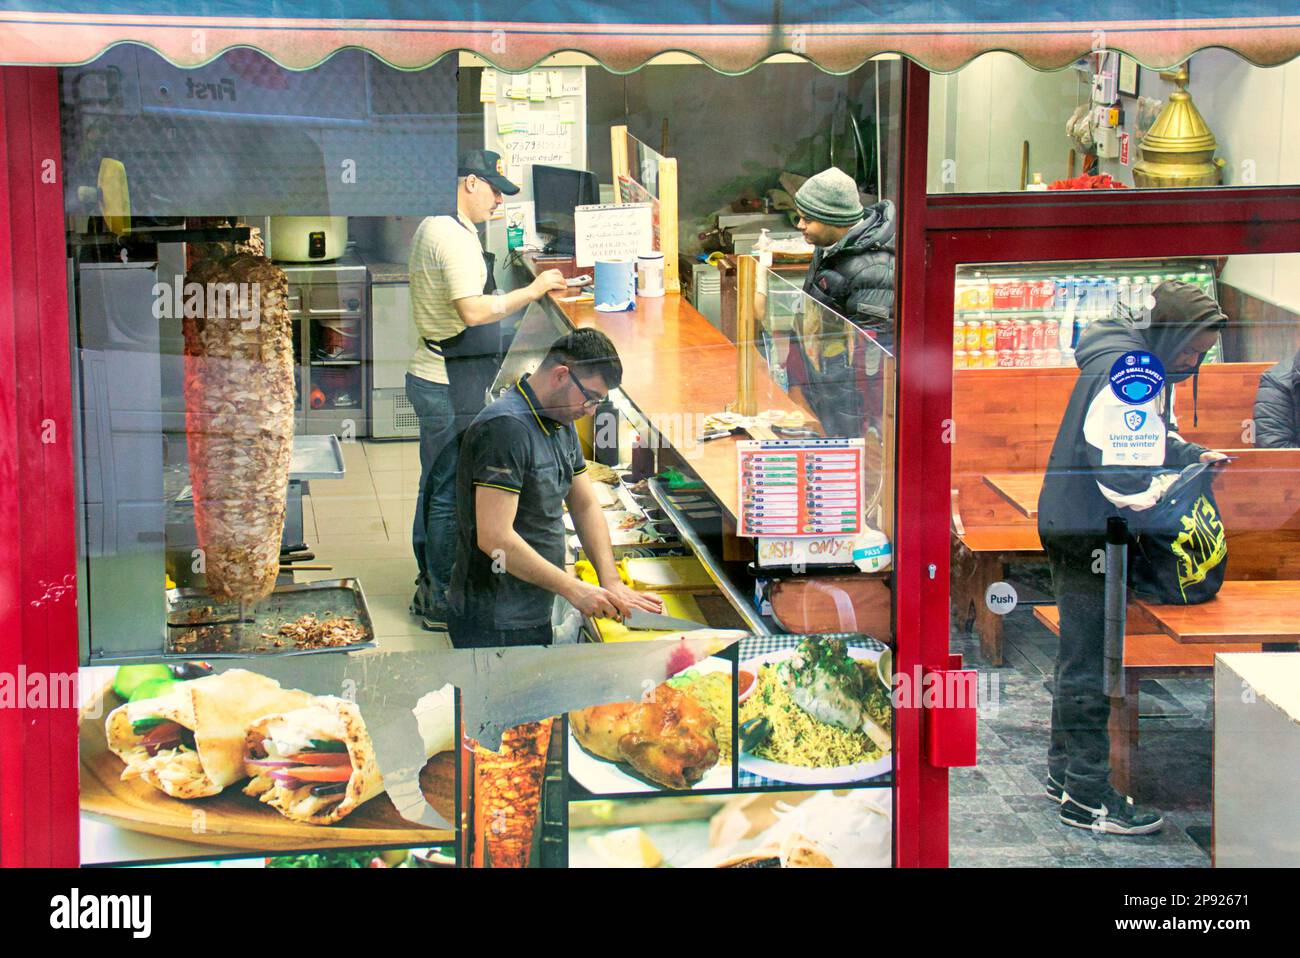 all'interno del kebab pizza take away fast food locale vista da una strada pubblica attraverso la finestra Foto Stock